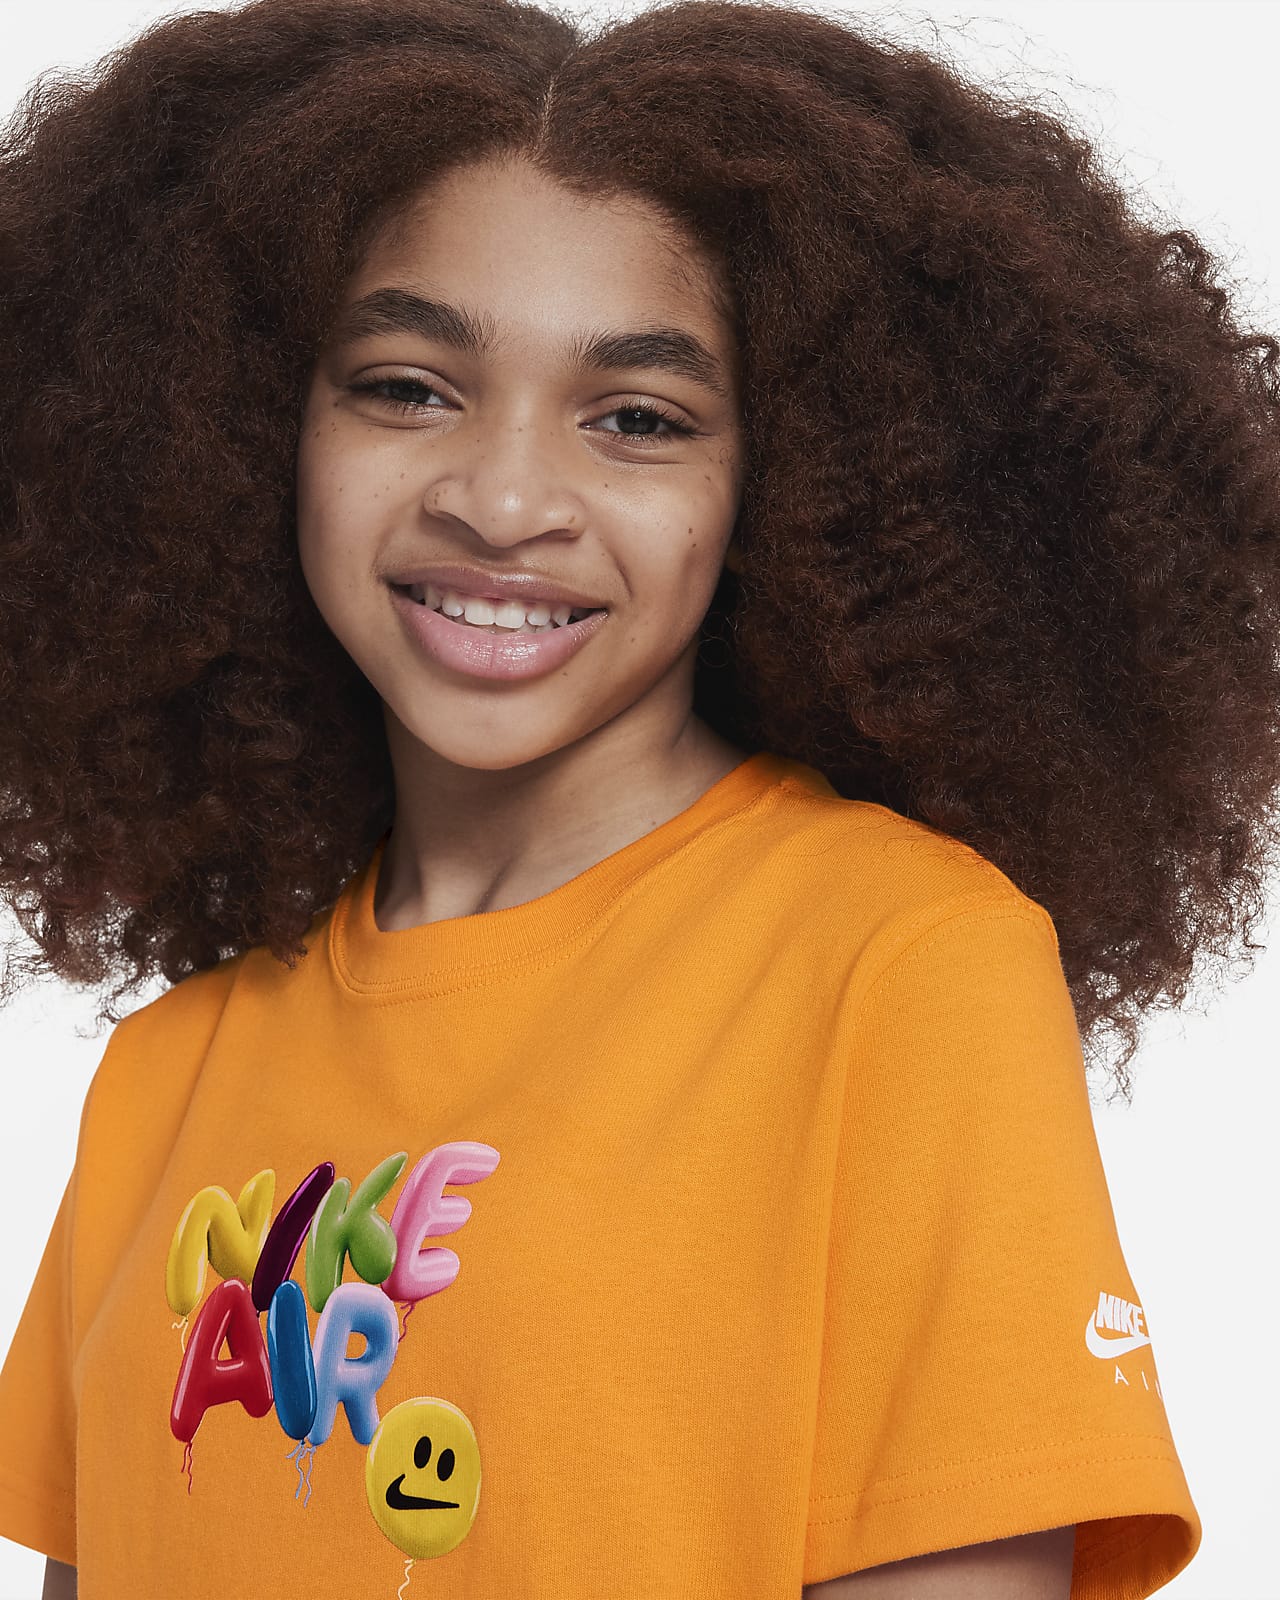 Nike Kids' T-Shirt - Orange